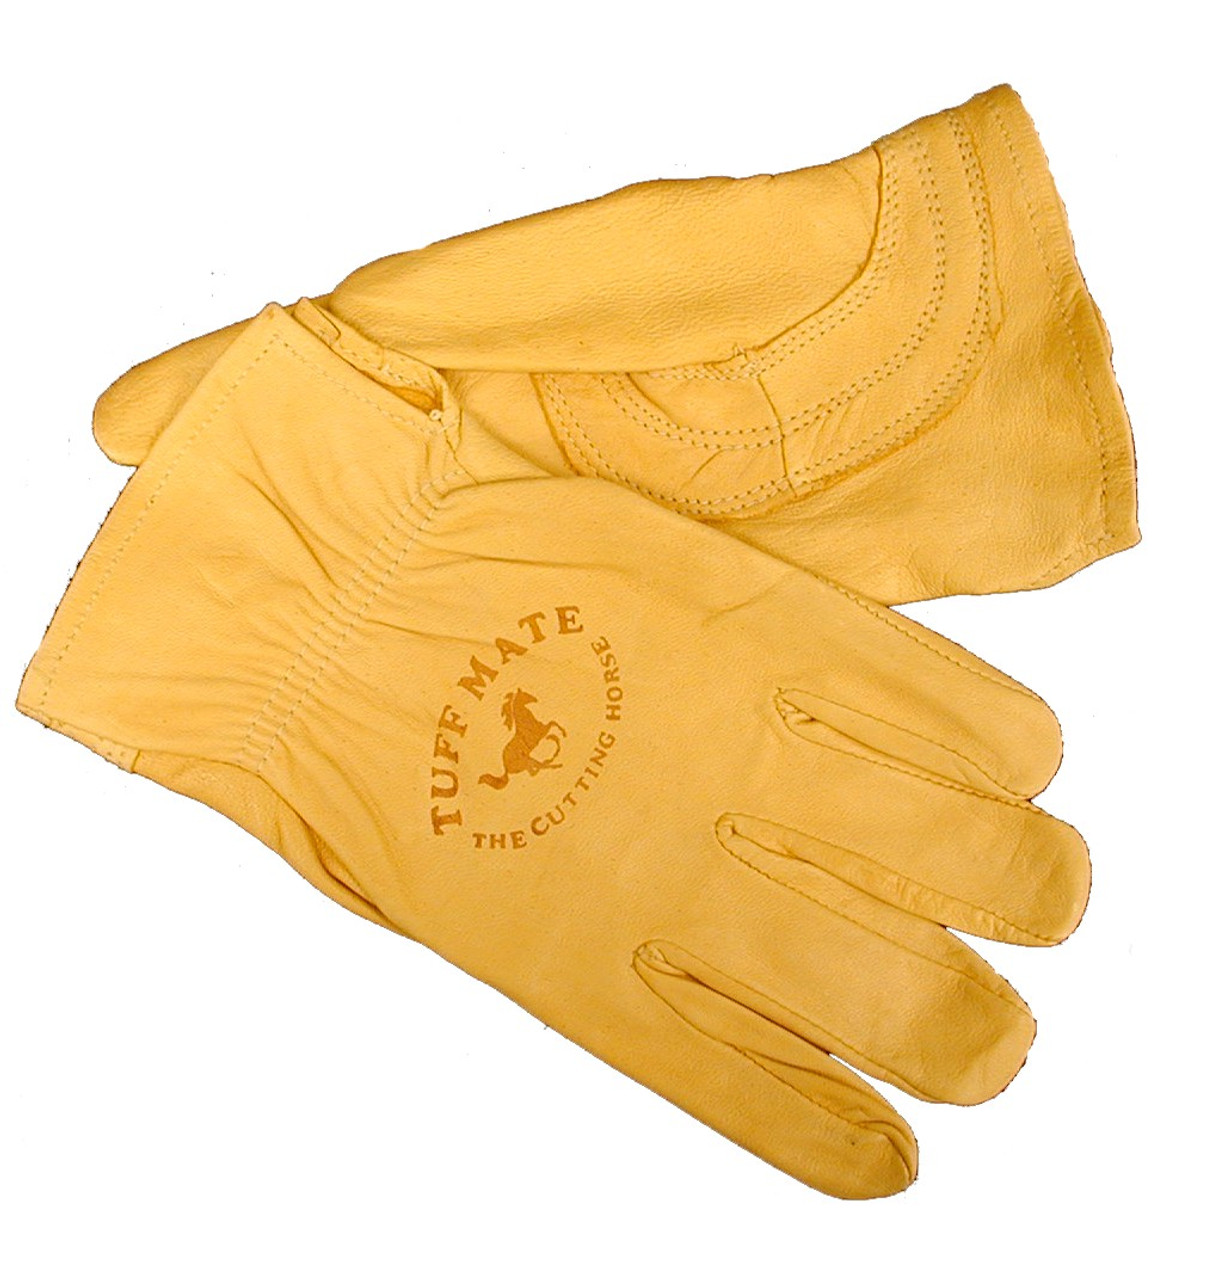 Tuff Mate Original Cutting Horse Glove (unlined) Mens XX Large